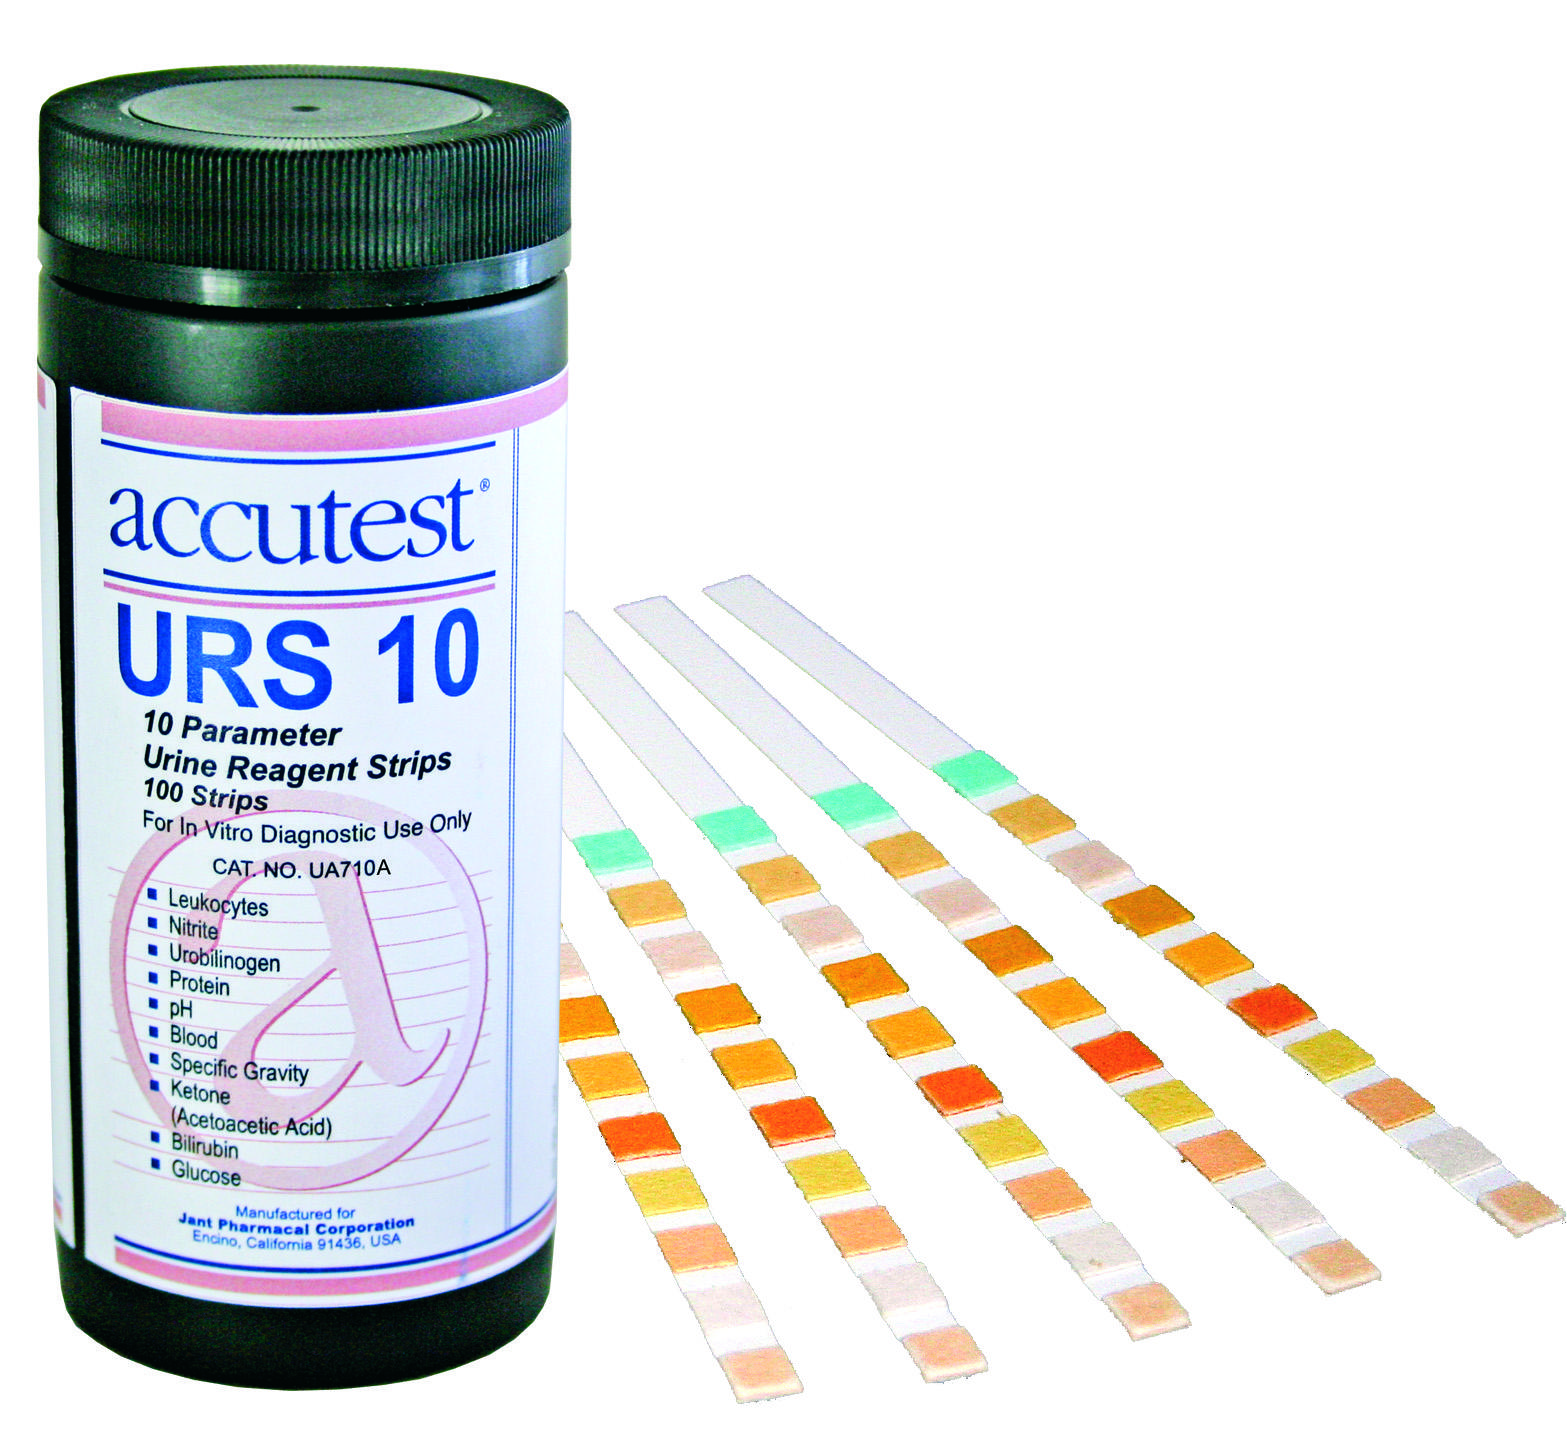 Accutest Urs 10 Urine Reagent Strips 100 Stripsbottle